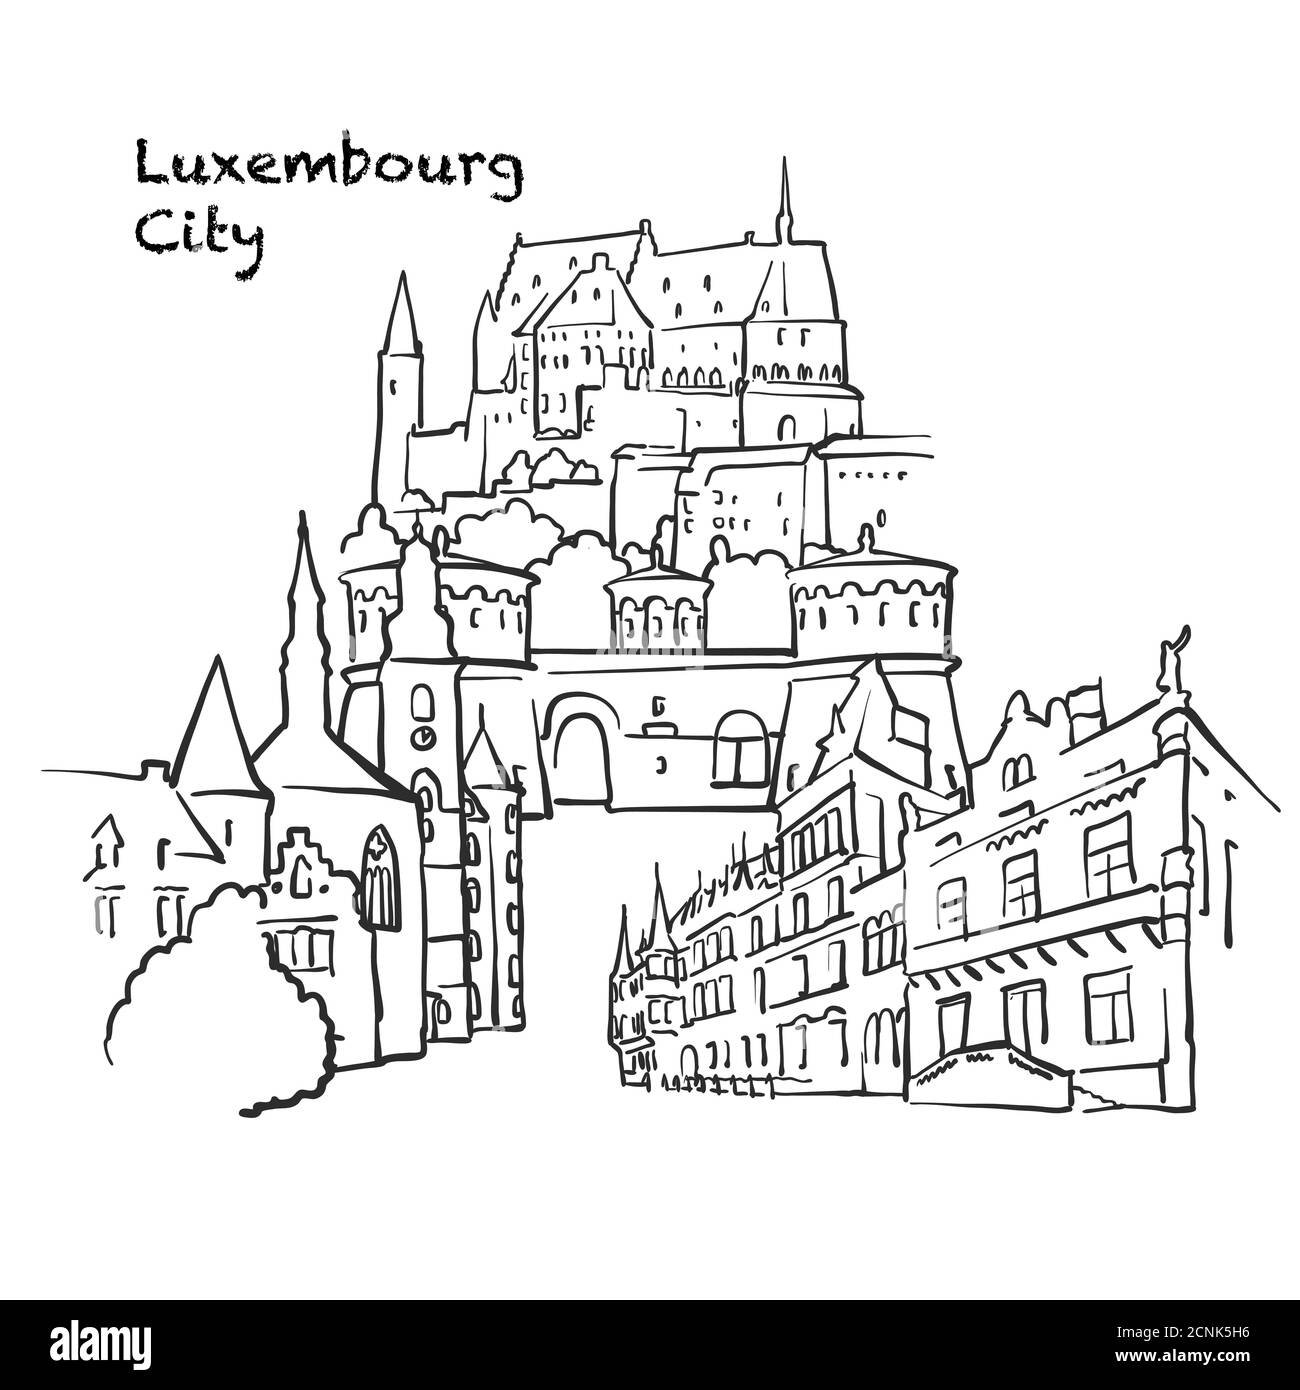 Berühmte Gebäude der Stadt Luxemburg, Luxemburg Zusammensetzung. Handgezeichnete schwarz-weiße Vektorgrafik. Gruppierte und bewegliche Objekte. Stock Vektor